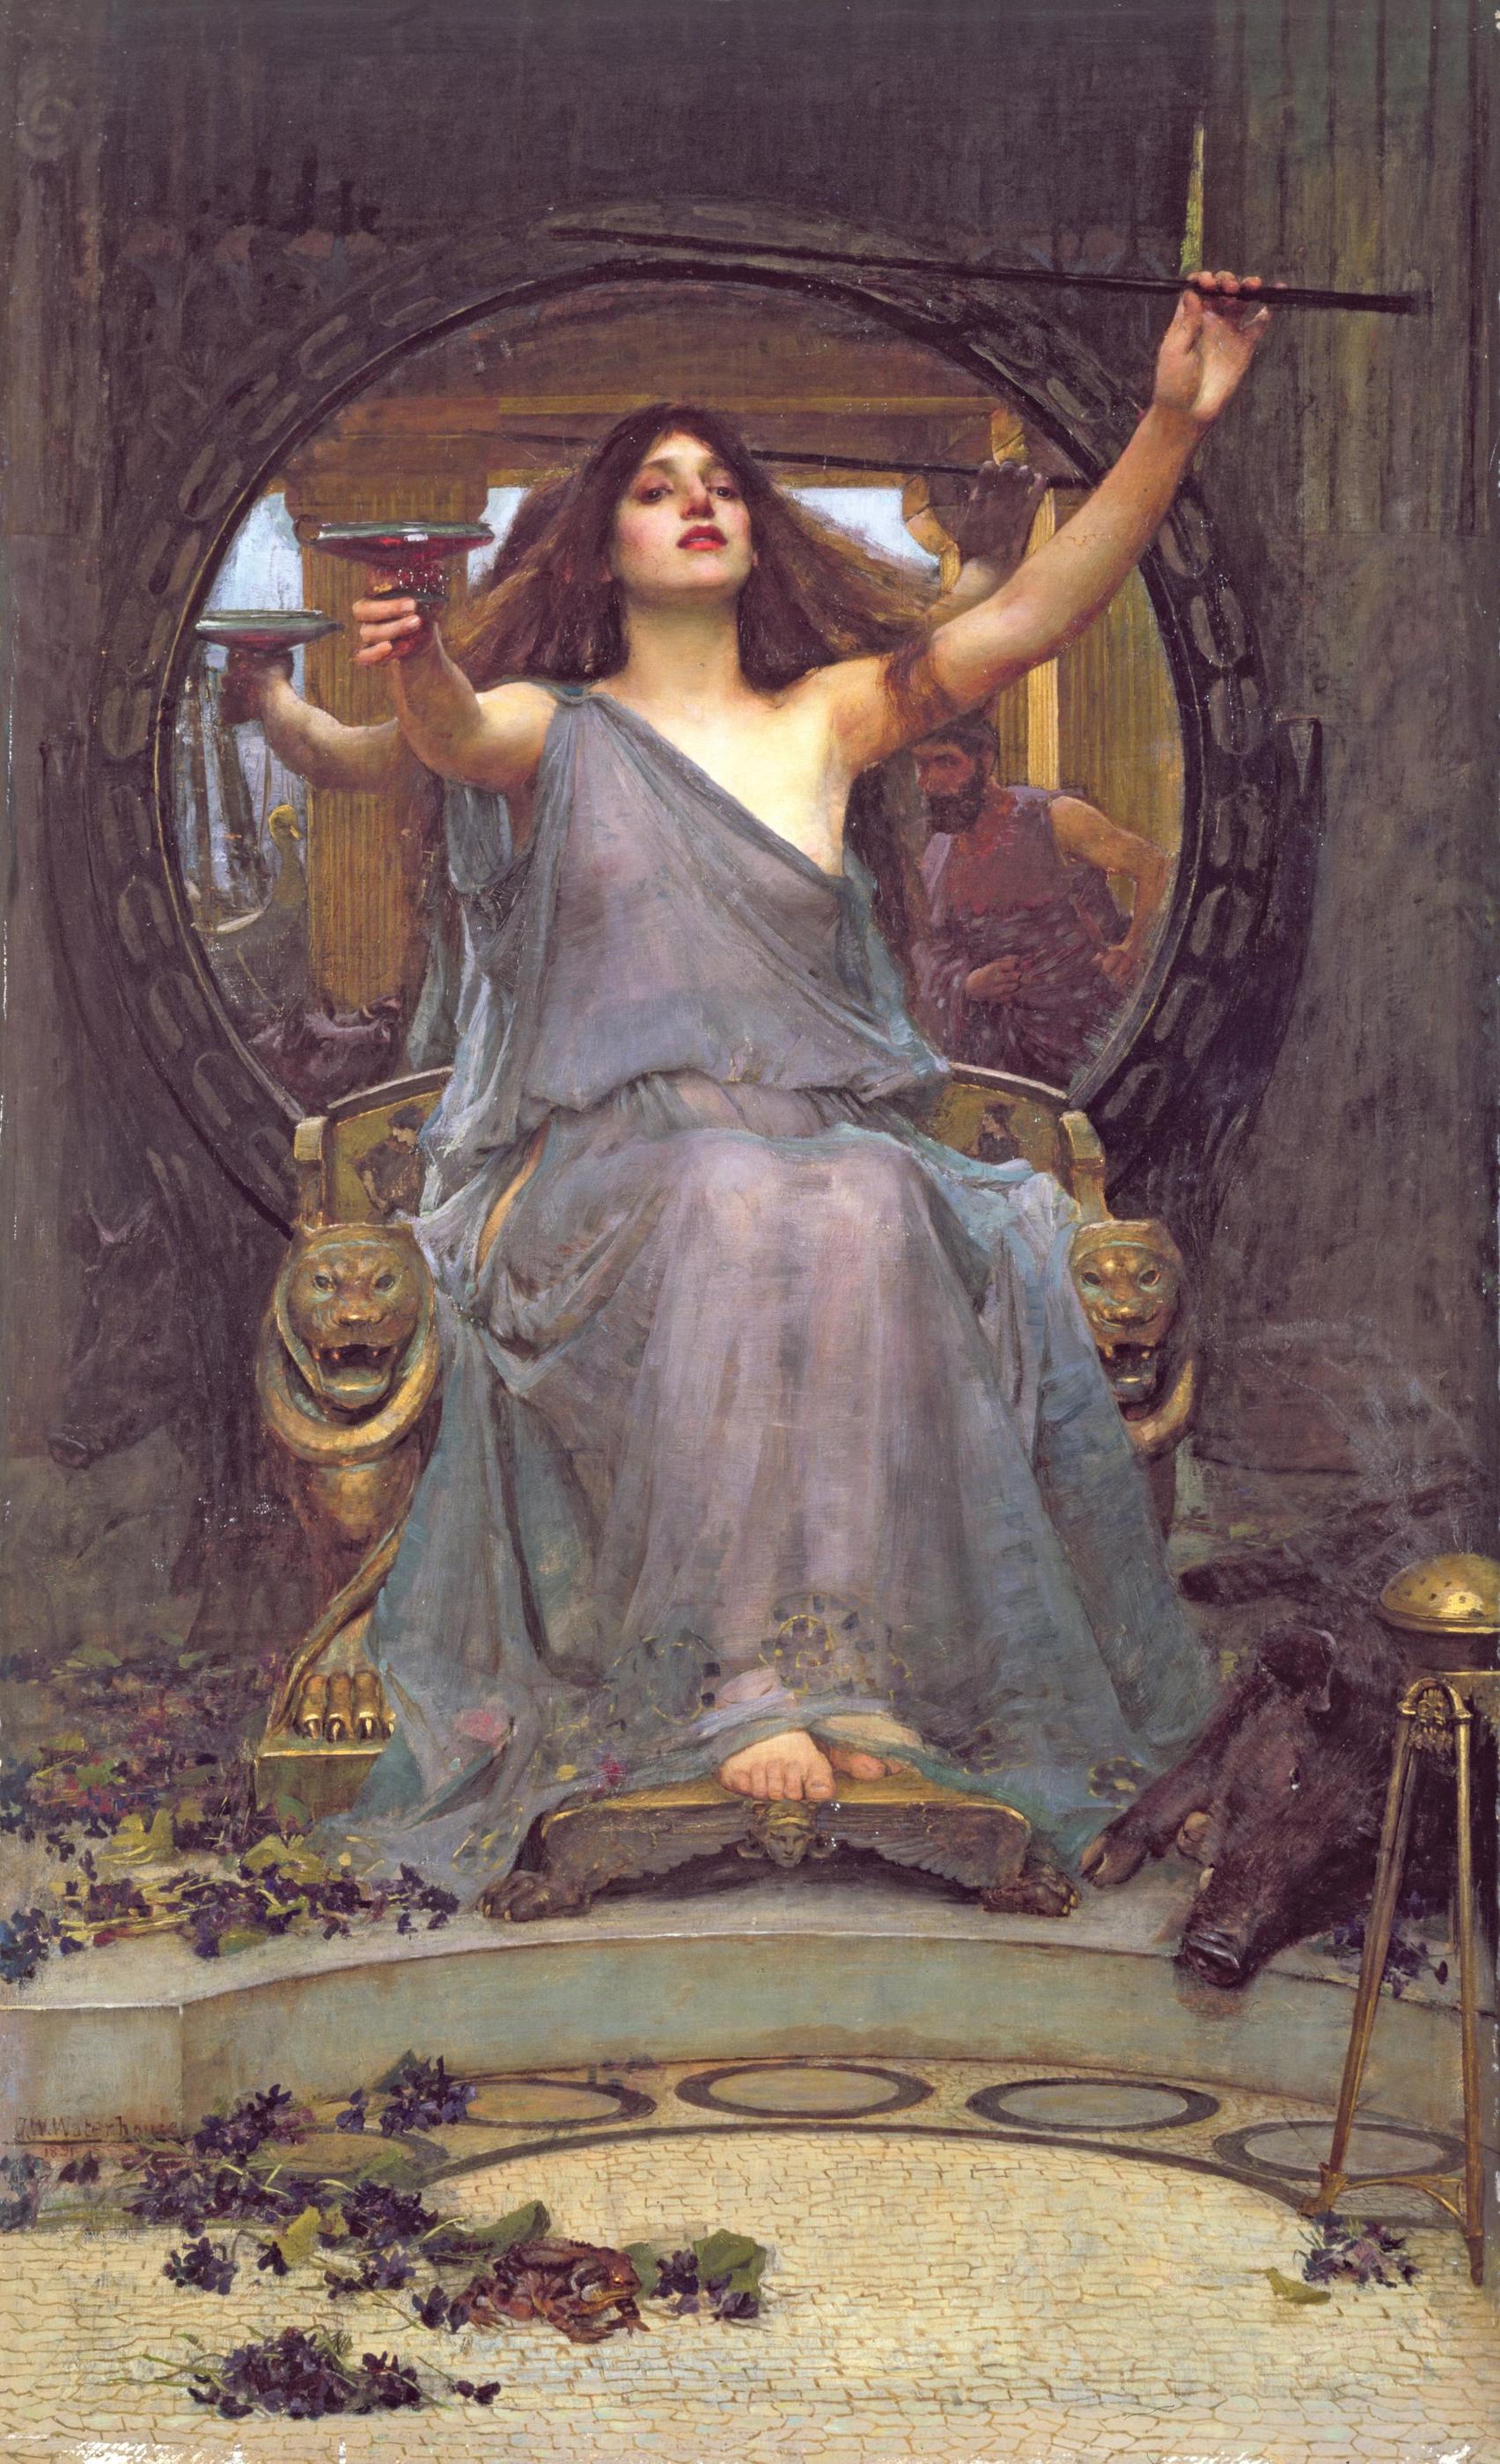 オデュッセウスに杯を差し出すキルケ by John William Waterhouse - 1891年 - 175 cm × 92 cm 